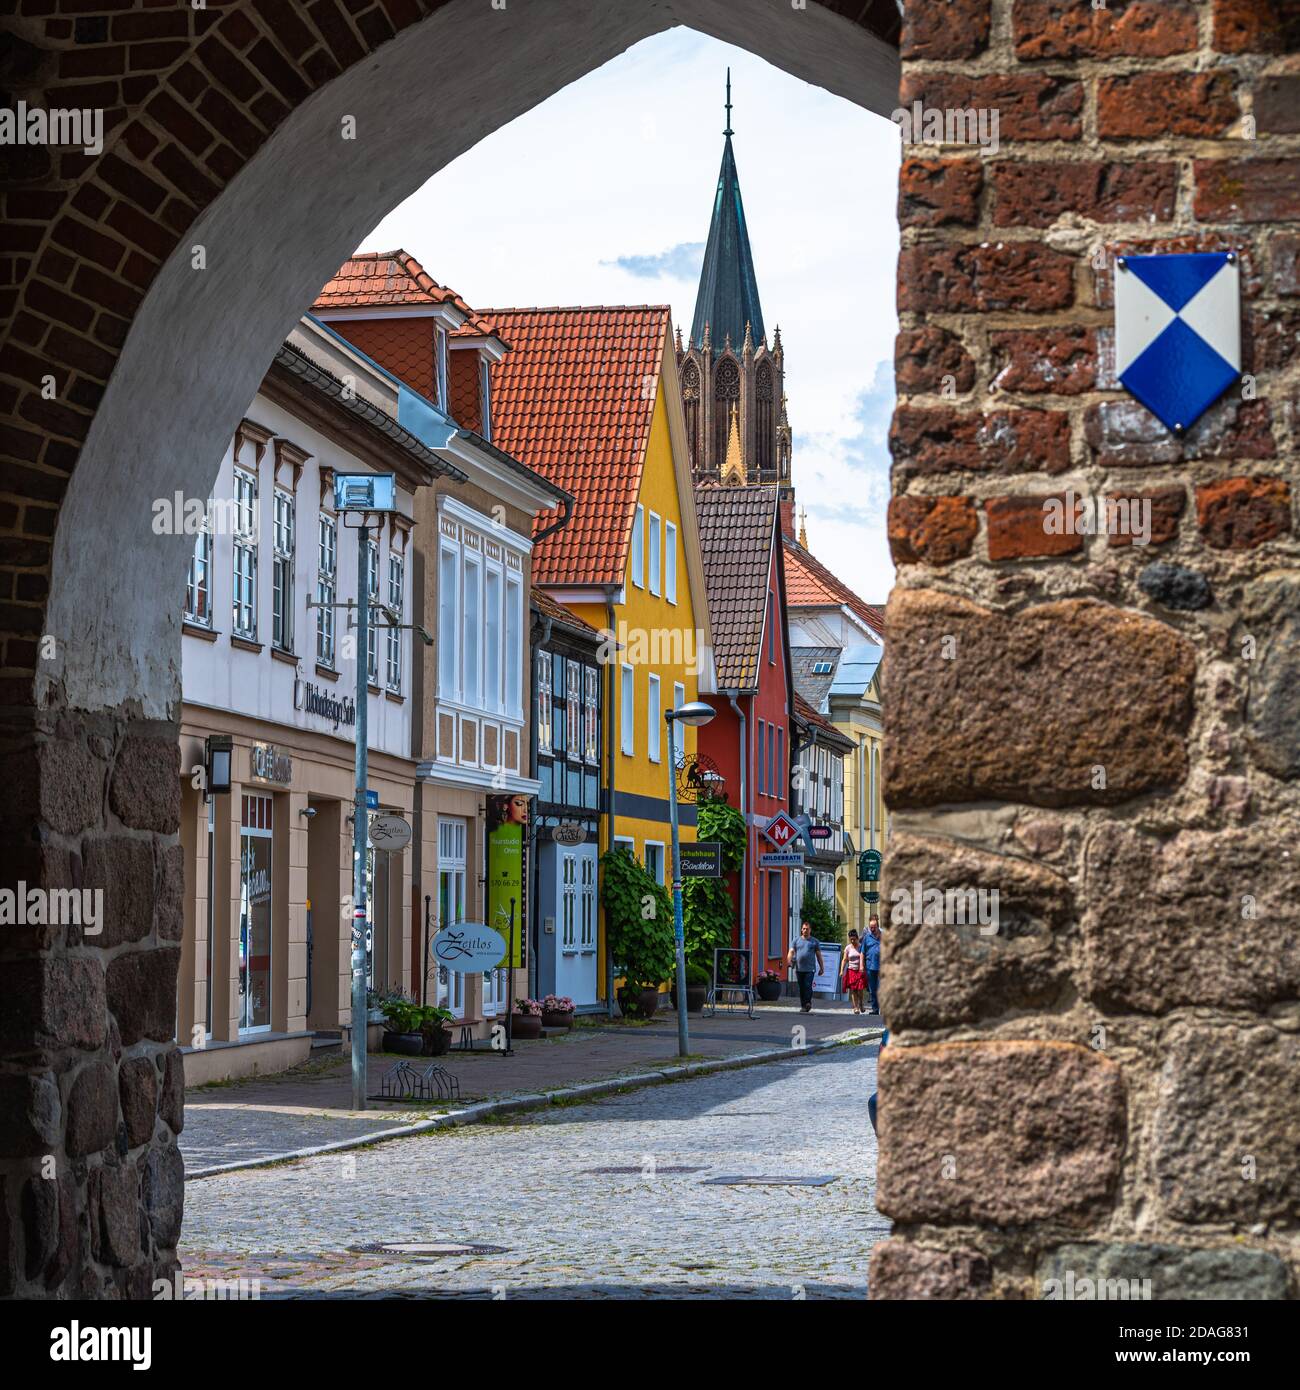 Neubrandenburg, Stadtansichten, Altstadt: Häuser und Straßen Foto Stock